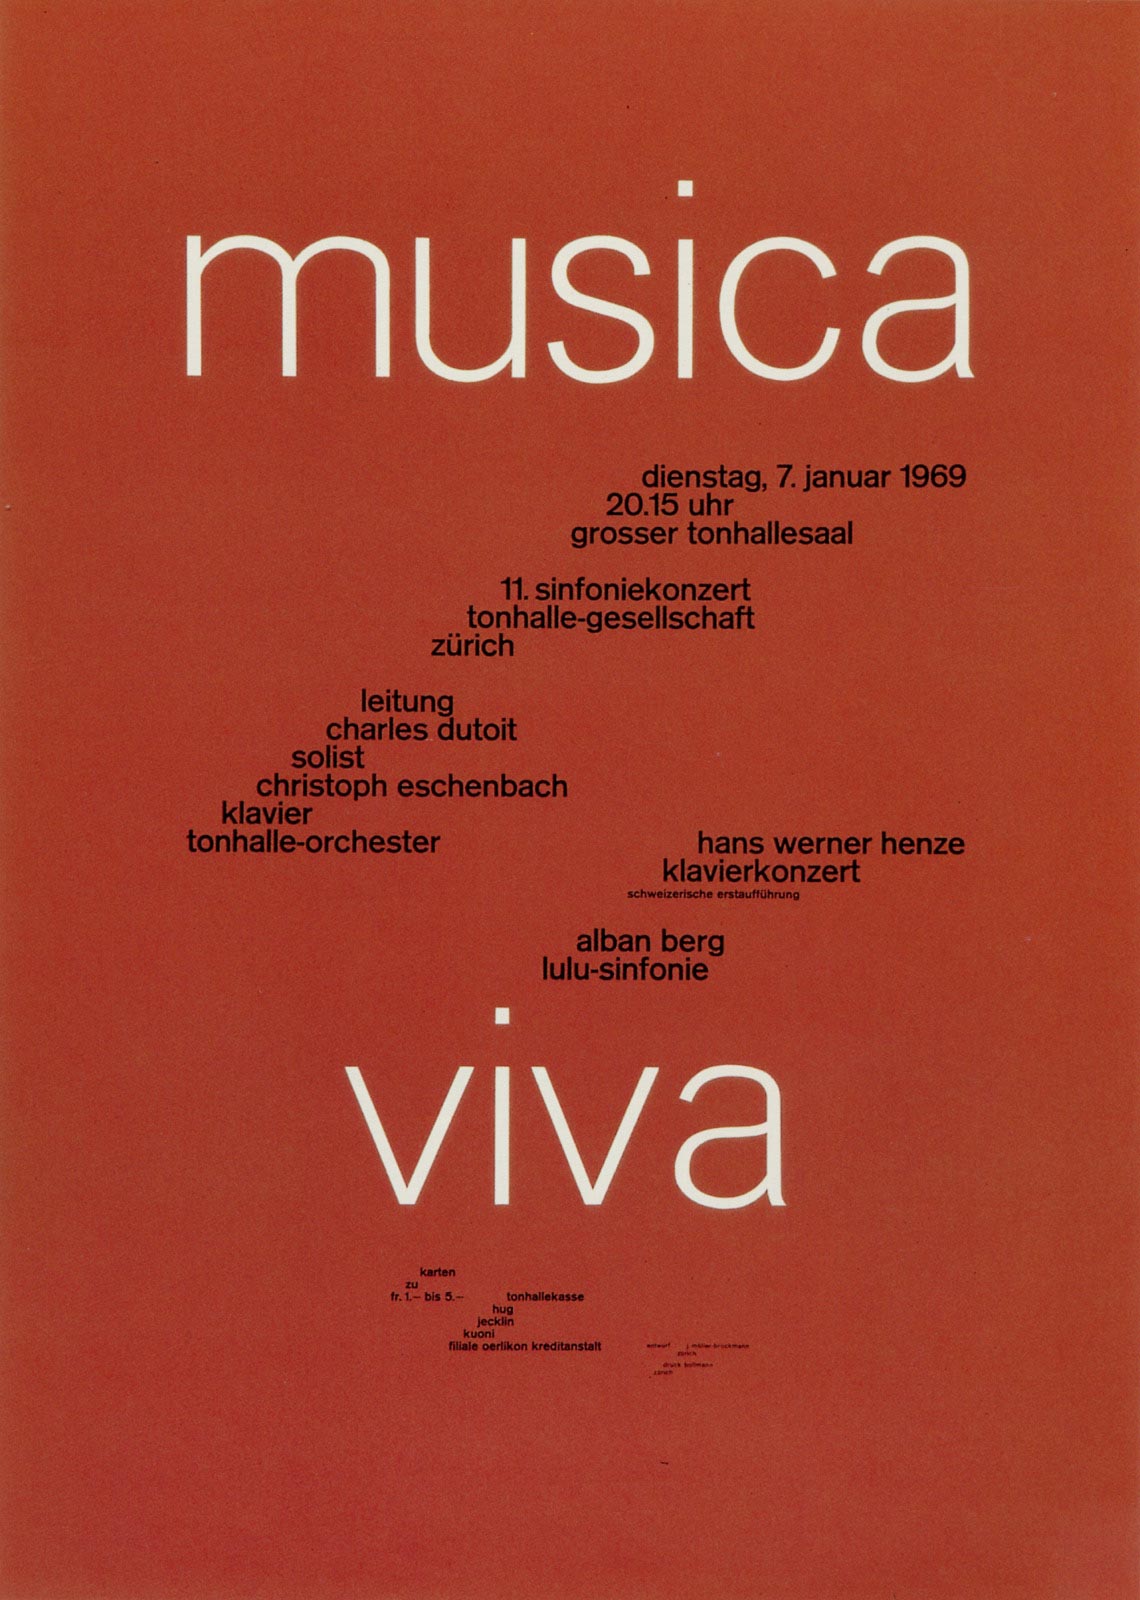 9. Zurich Tonhalle. musica viva. Concert poster, 1969